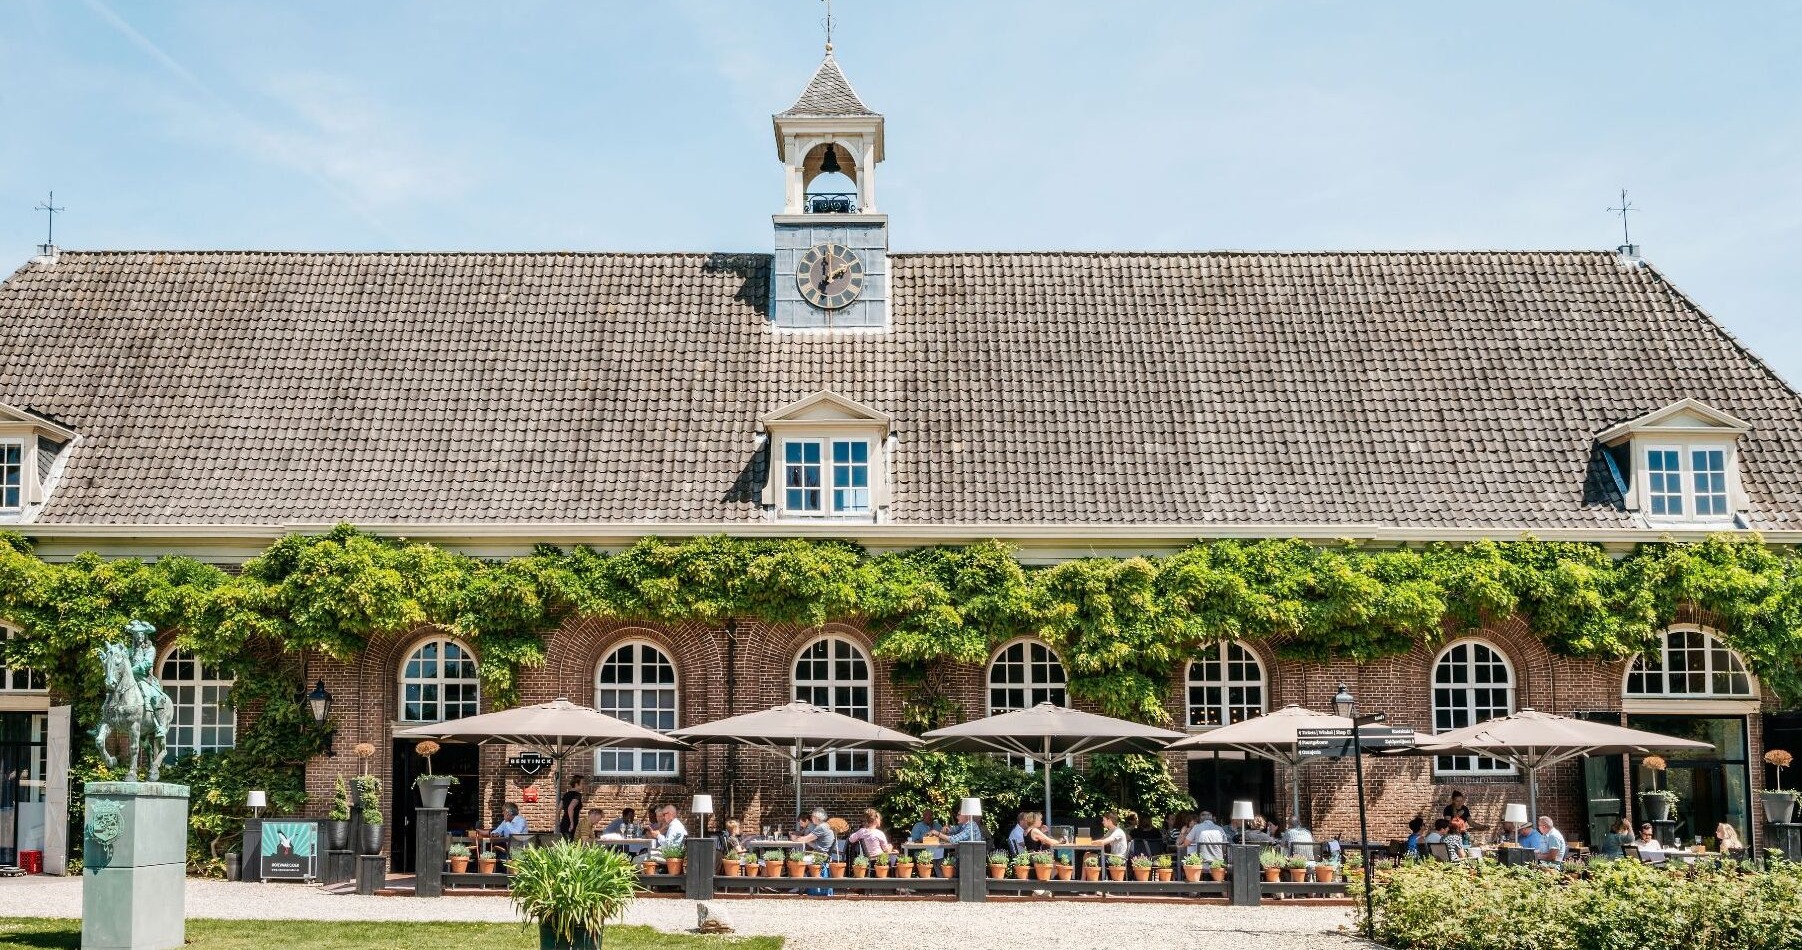 In mei 2019 organiseerden Swijnenburg en Straight Line Leadership samen het evenement "Horecaleiders" in het Koetshuis van Buitenplaats Amerongen